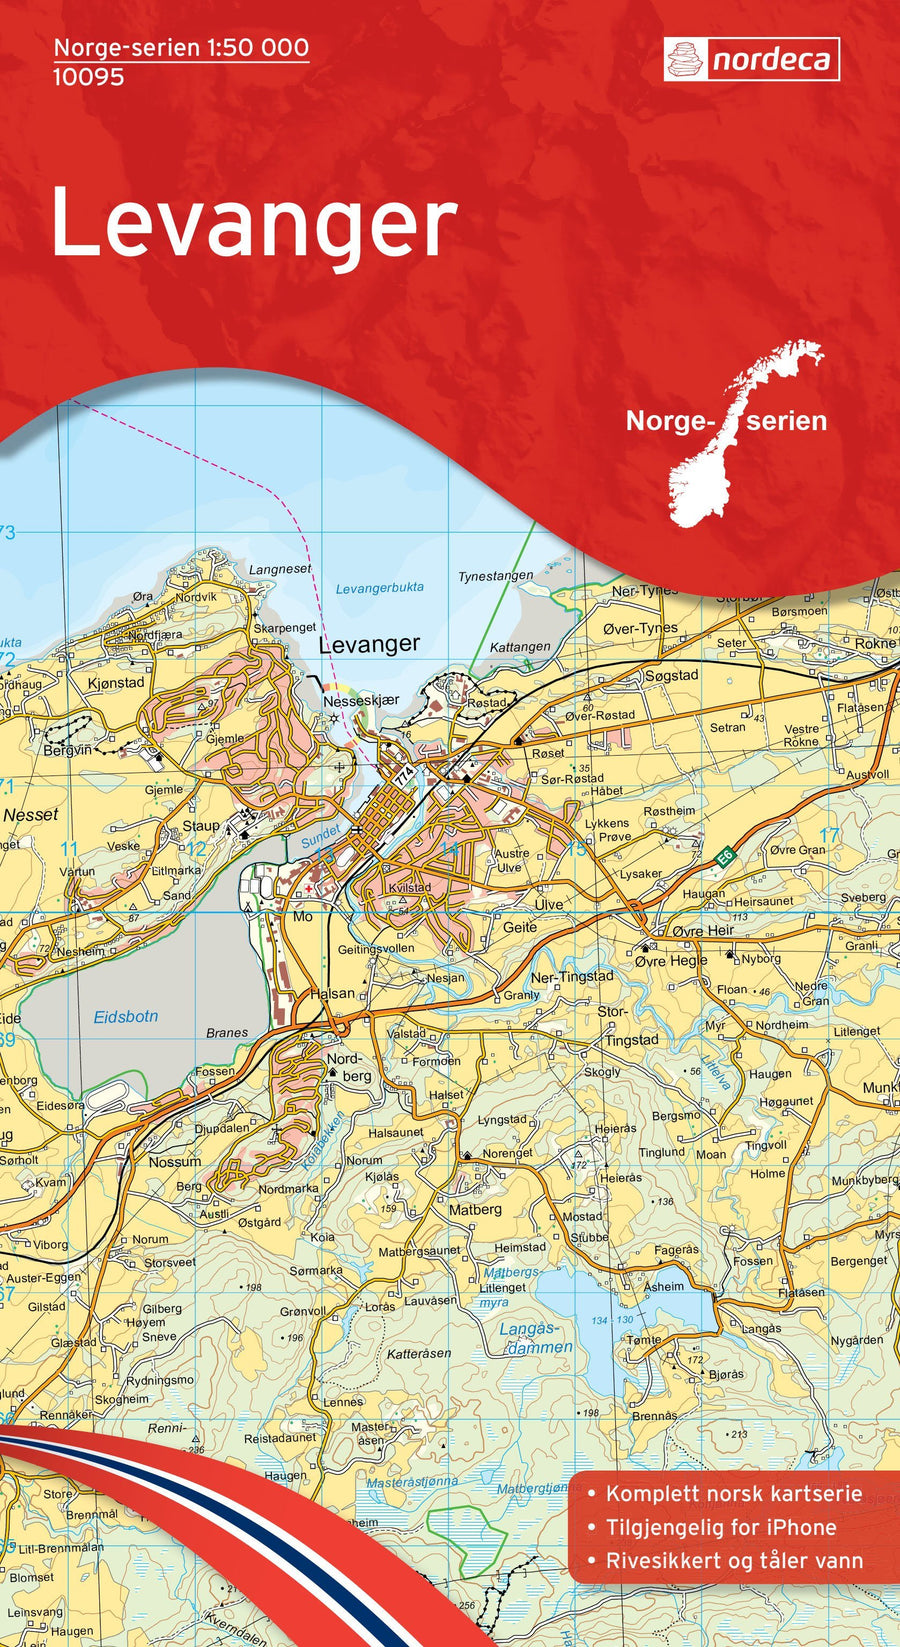 Carte de randonnée n° 10095 - Levanger (Norvège) | Nordeca - Norge-serien carte pliée Nordeca 